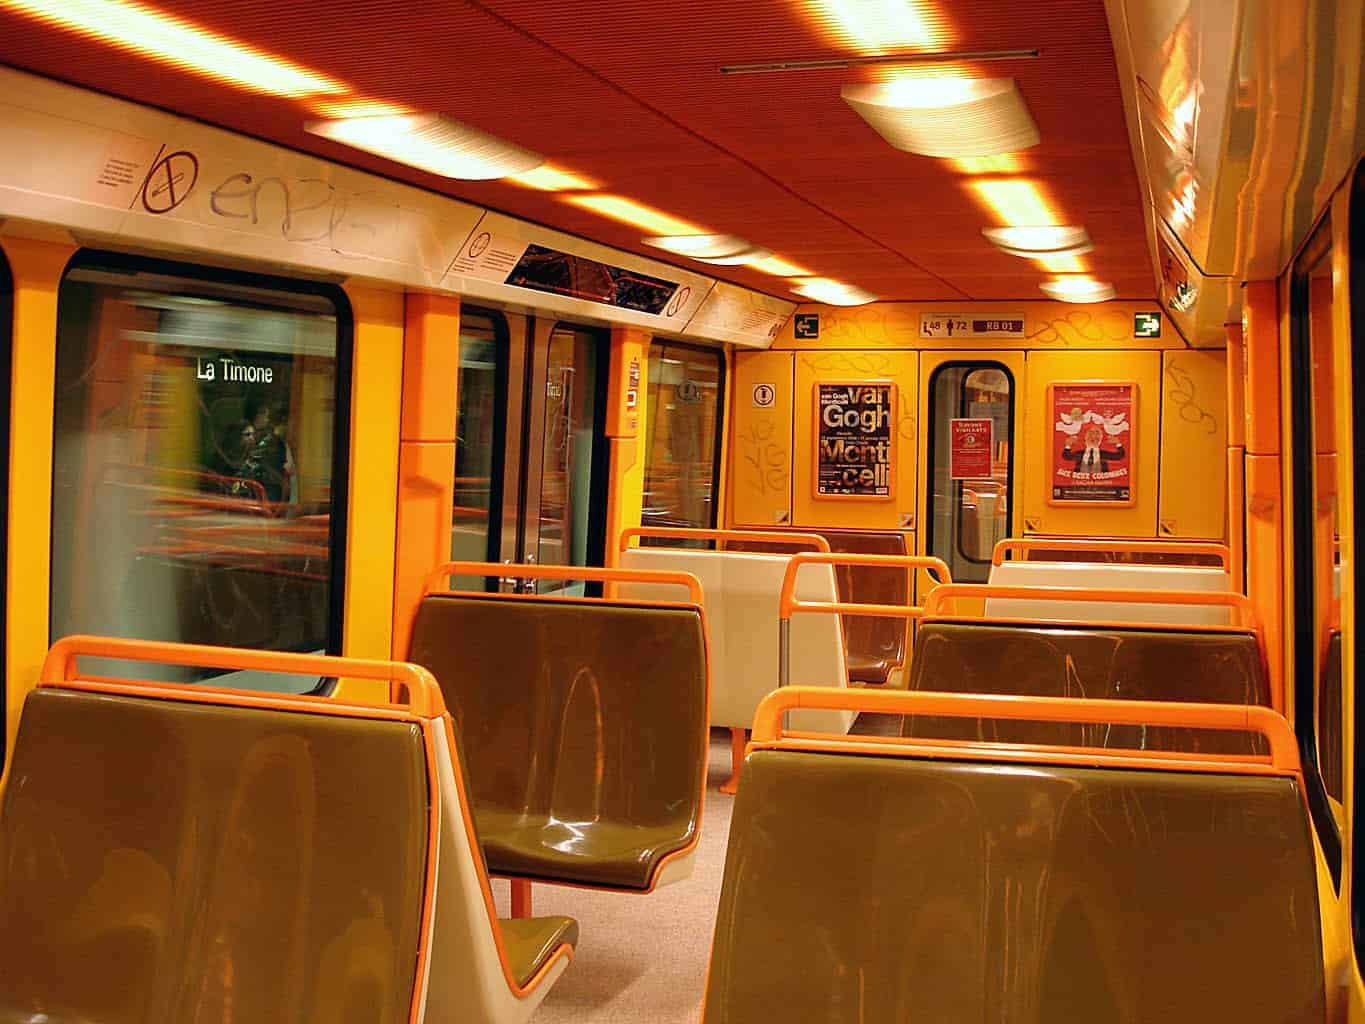 métro, Quel projet pour le nouveau métro automatique RTM à Marseille ?, Made in Marseille